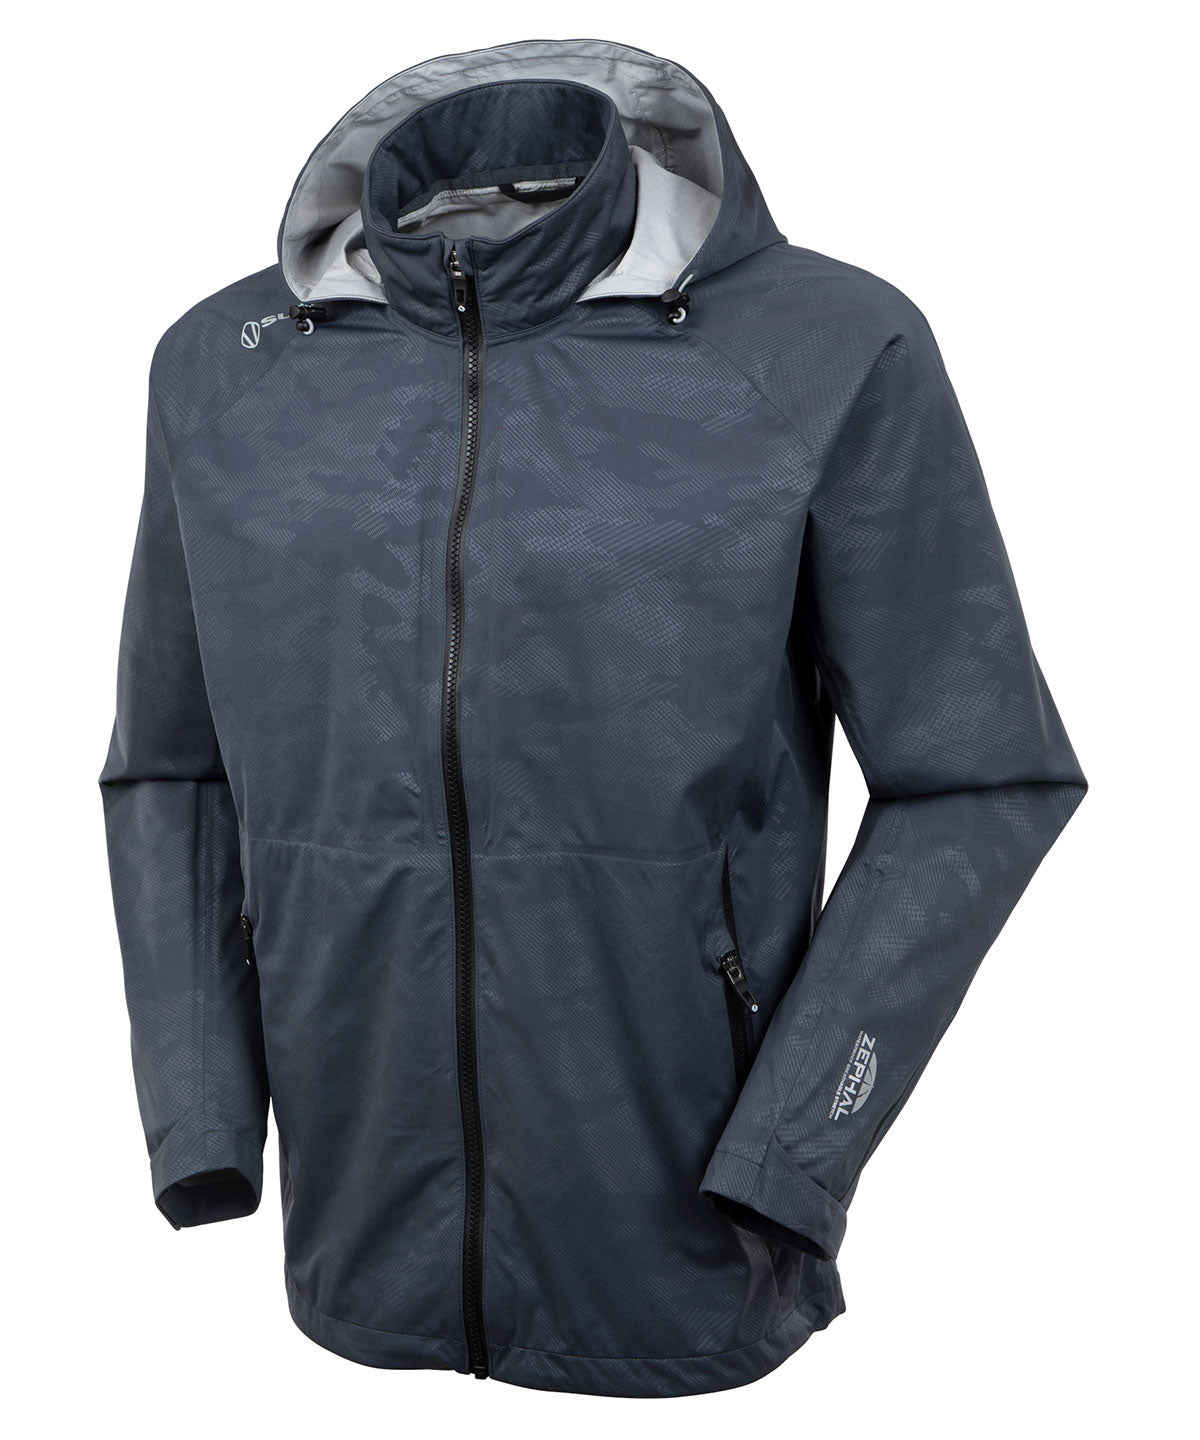 Men's Joe Zephal Flextech Waterproof Rain Jacket with Packable 